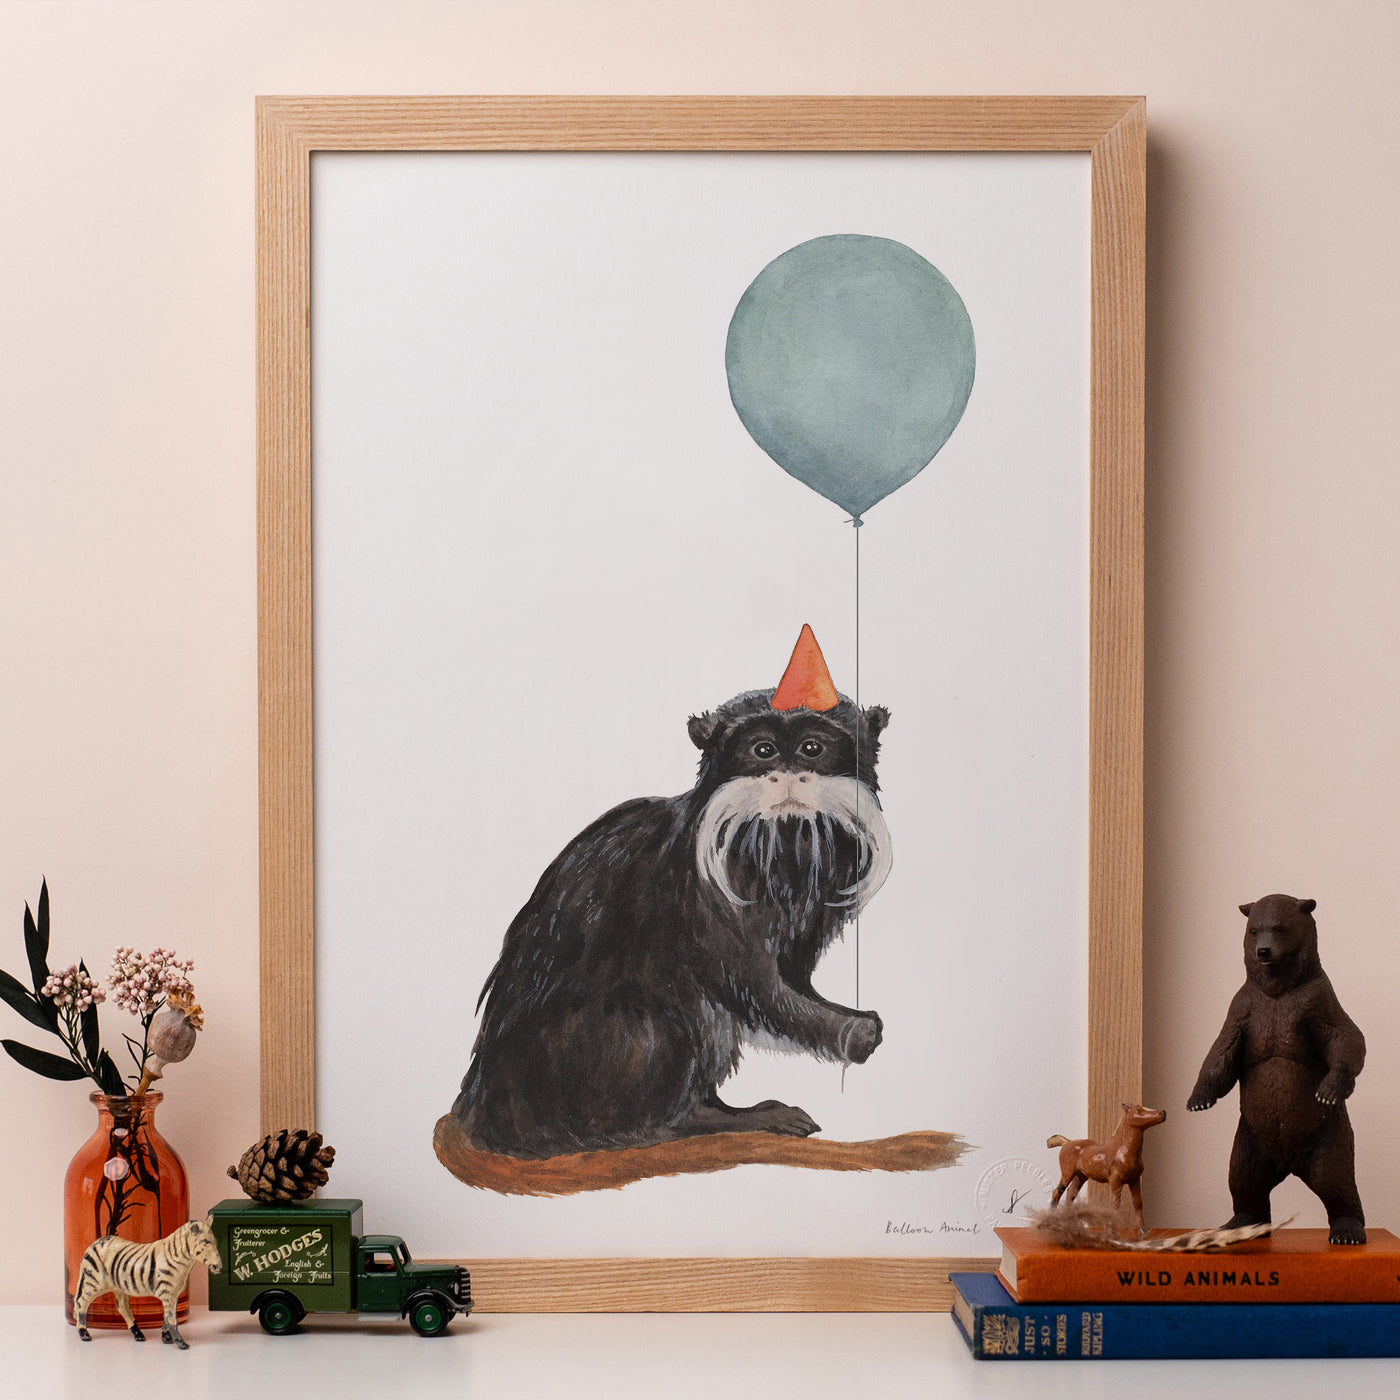 Balloon Animal Print - Emperor Tamarin